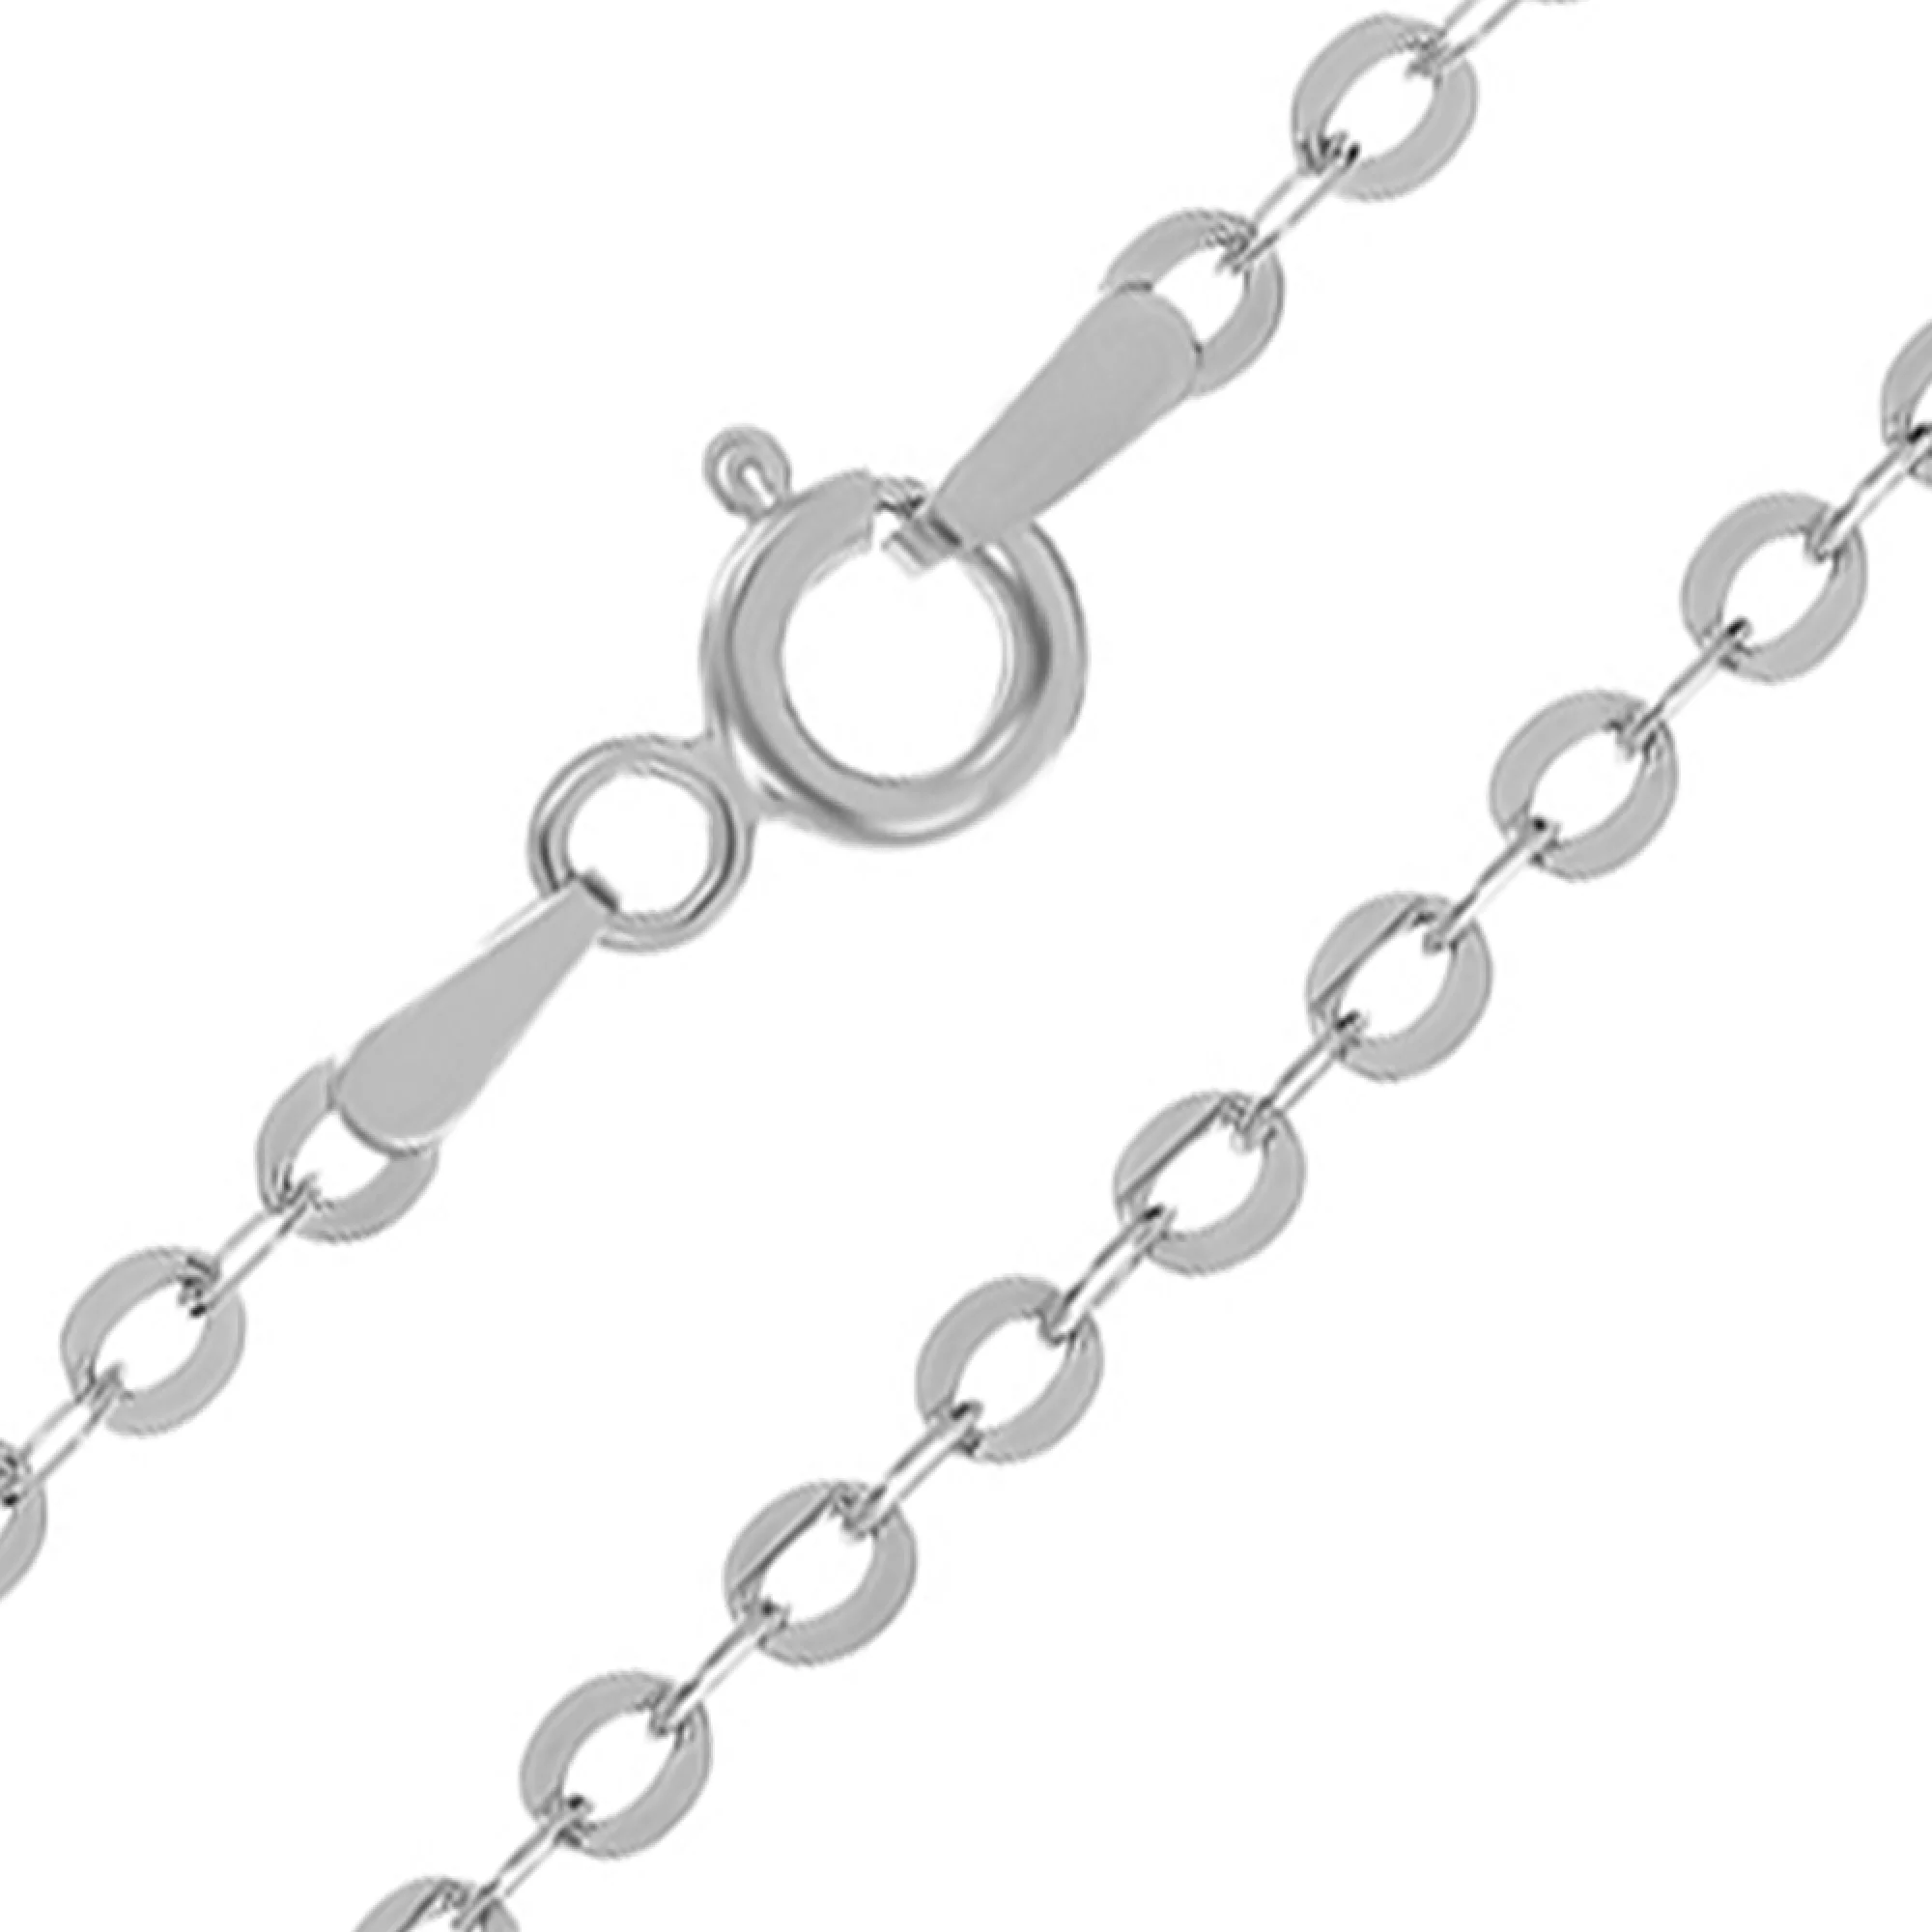 Серебряная цепочка плетение якорь круглый. Артикул 7508/151Р2/45: цена,отзывы, фото – купить в интернет-магазине AURUM